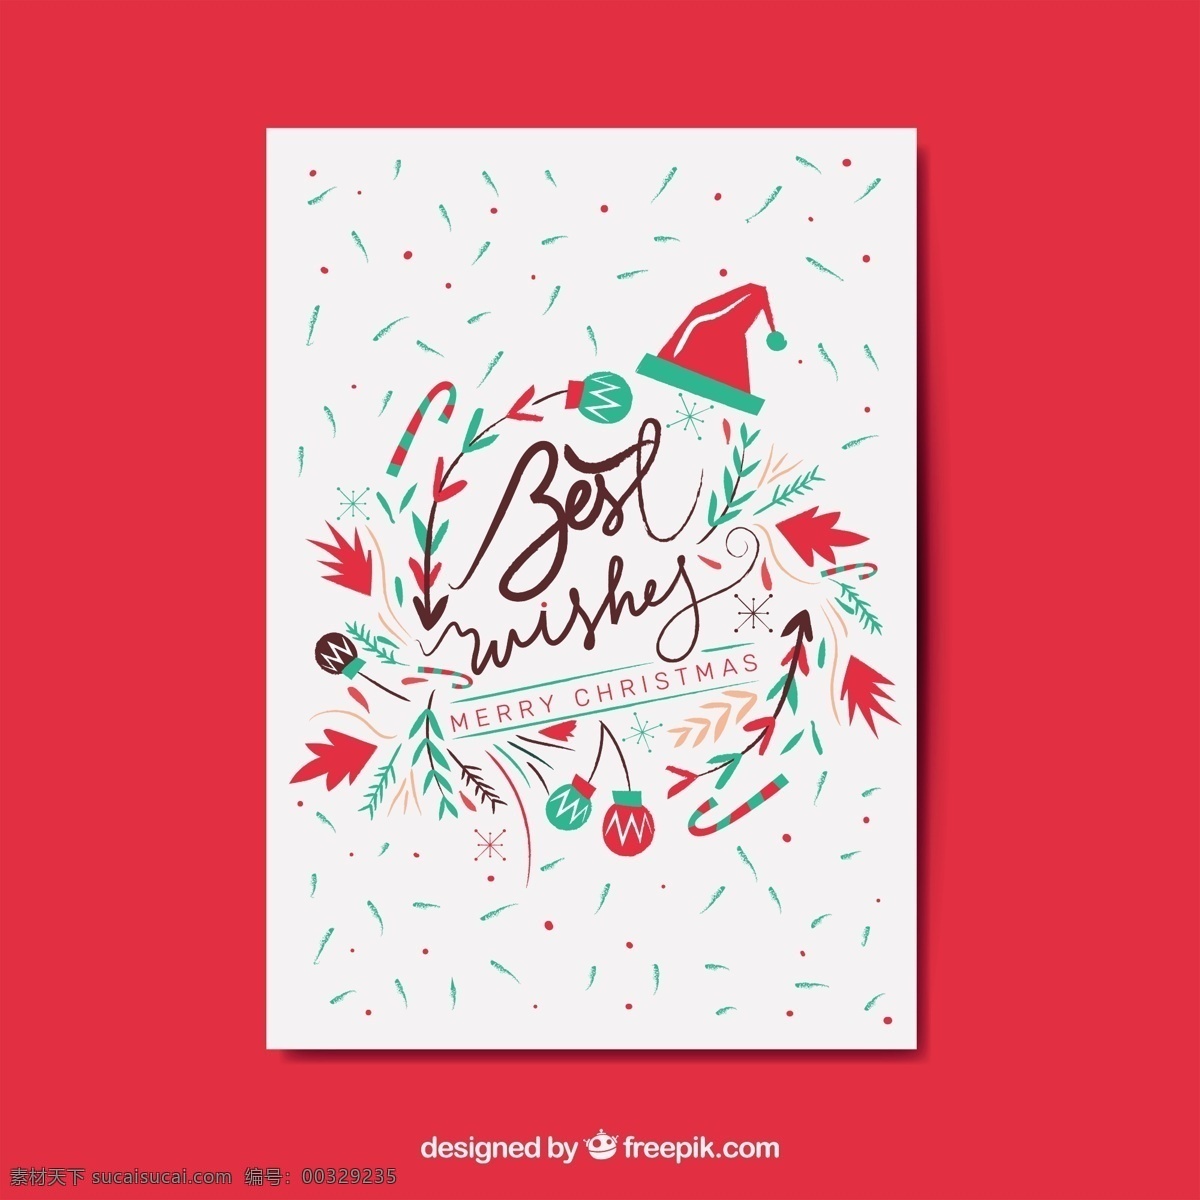 手绘 圣诞卡 抽象 风格 圣诞节 抽象的 一方面 卡片 圣诞快乐 冬天 快乐 圣诞 庆祝 节日 绘画 节日快乐 贺卡 问候 得出 季节 红色